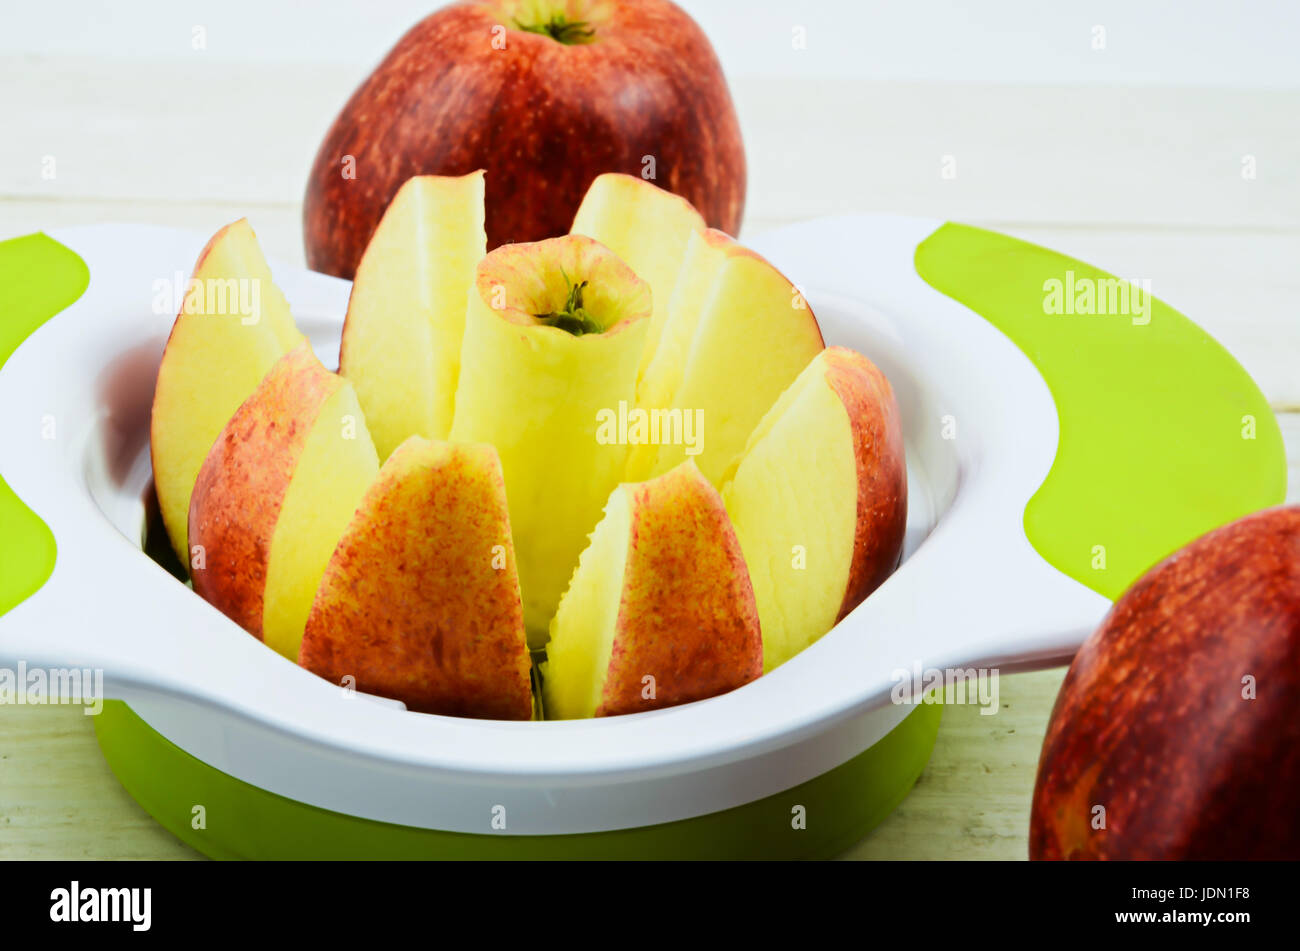 https://c8.alamy.com/comp/JDN1F8/apple-cutter-apple-slicer-on-white-board-JDN1F8.jpg